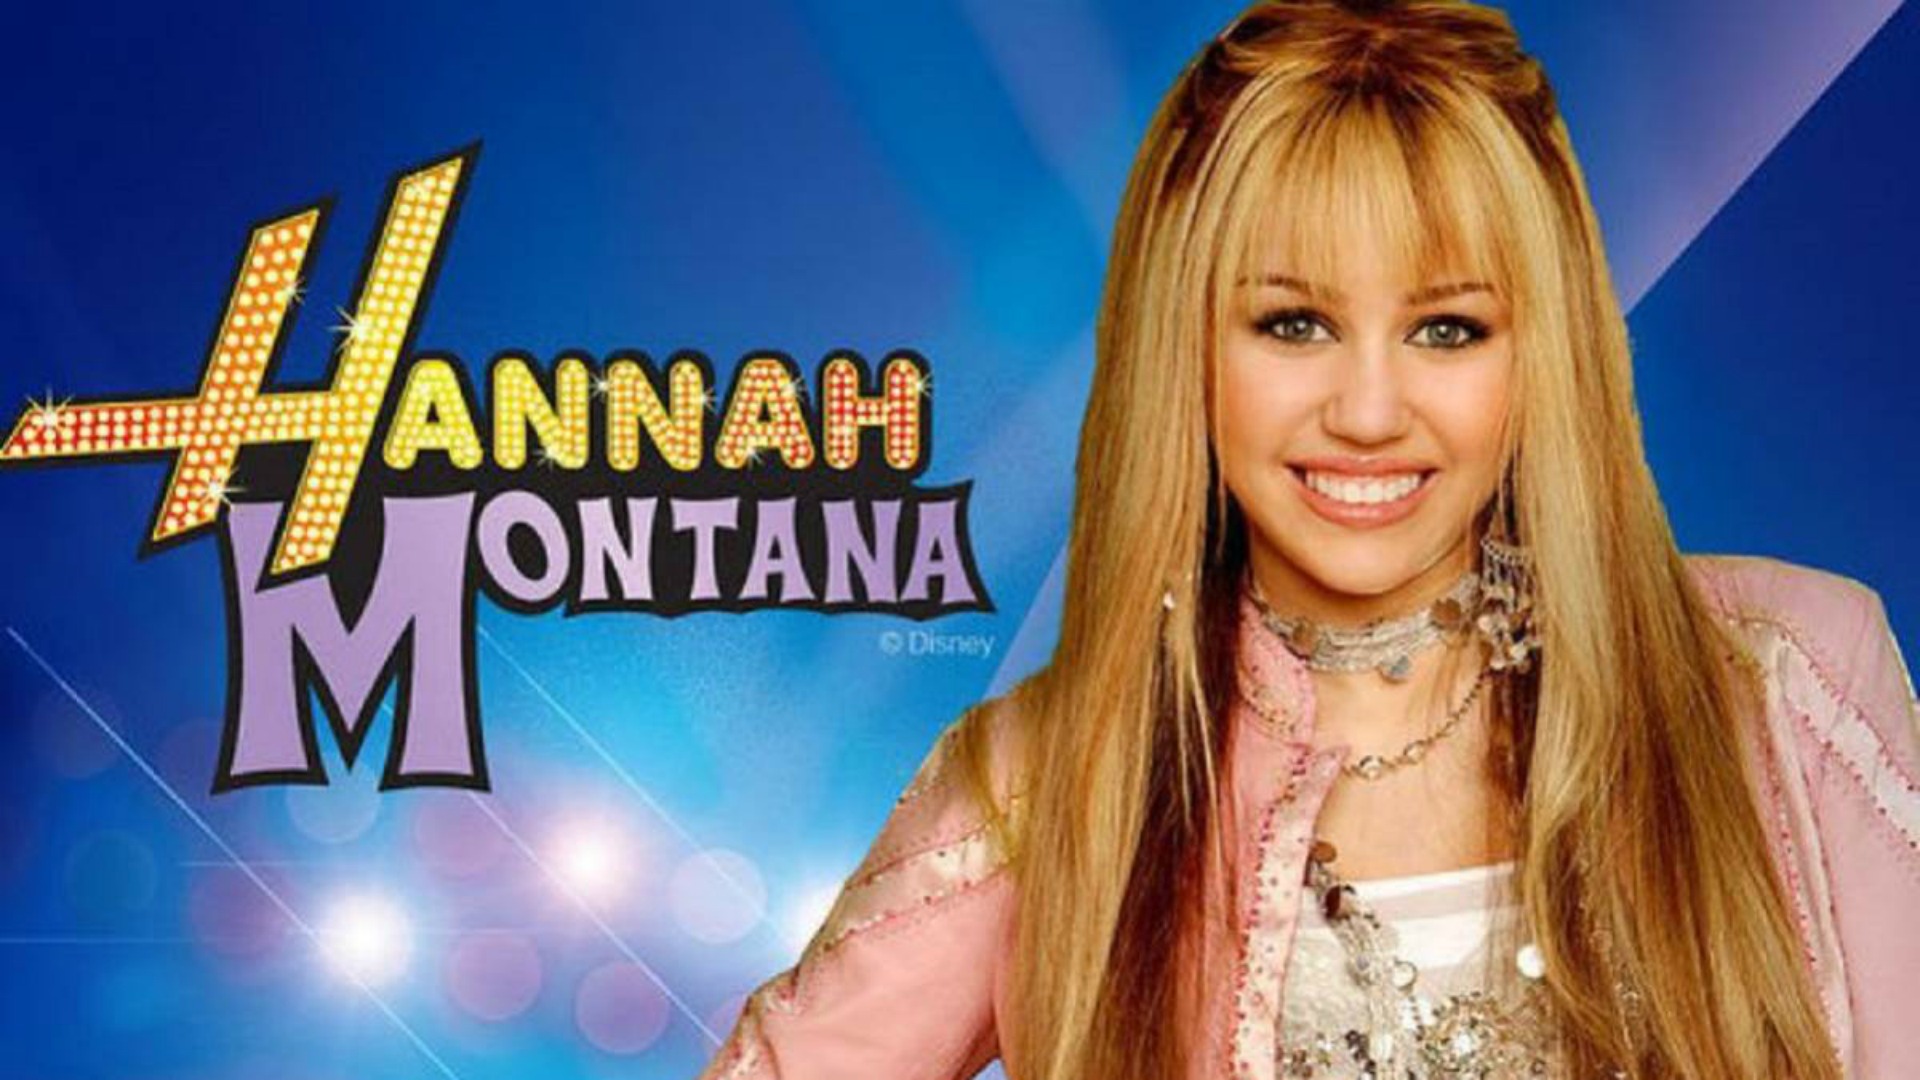 <p>La serie Disney di successo "Hannah Montana" è stata trasformata in un film, dando vita a uno dei più divertenti appuntamenti per gli adolescenti. In una scena, i personaggi interpretati da Miley Cyrus e Tyra Banks litigano per un paio di scarpe in un negozio. Chi vincerà?</p>